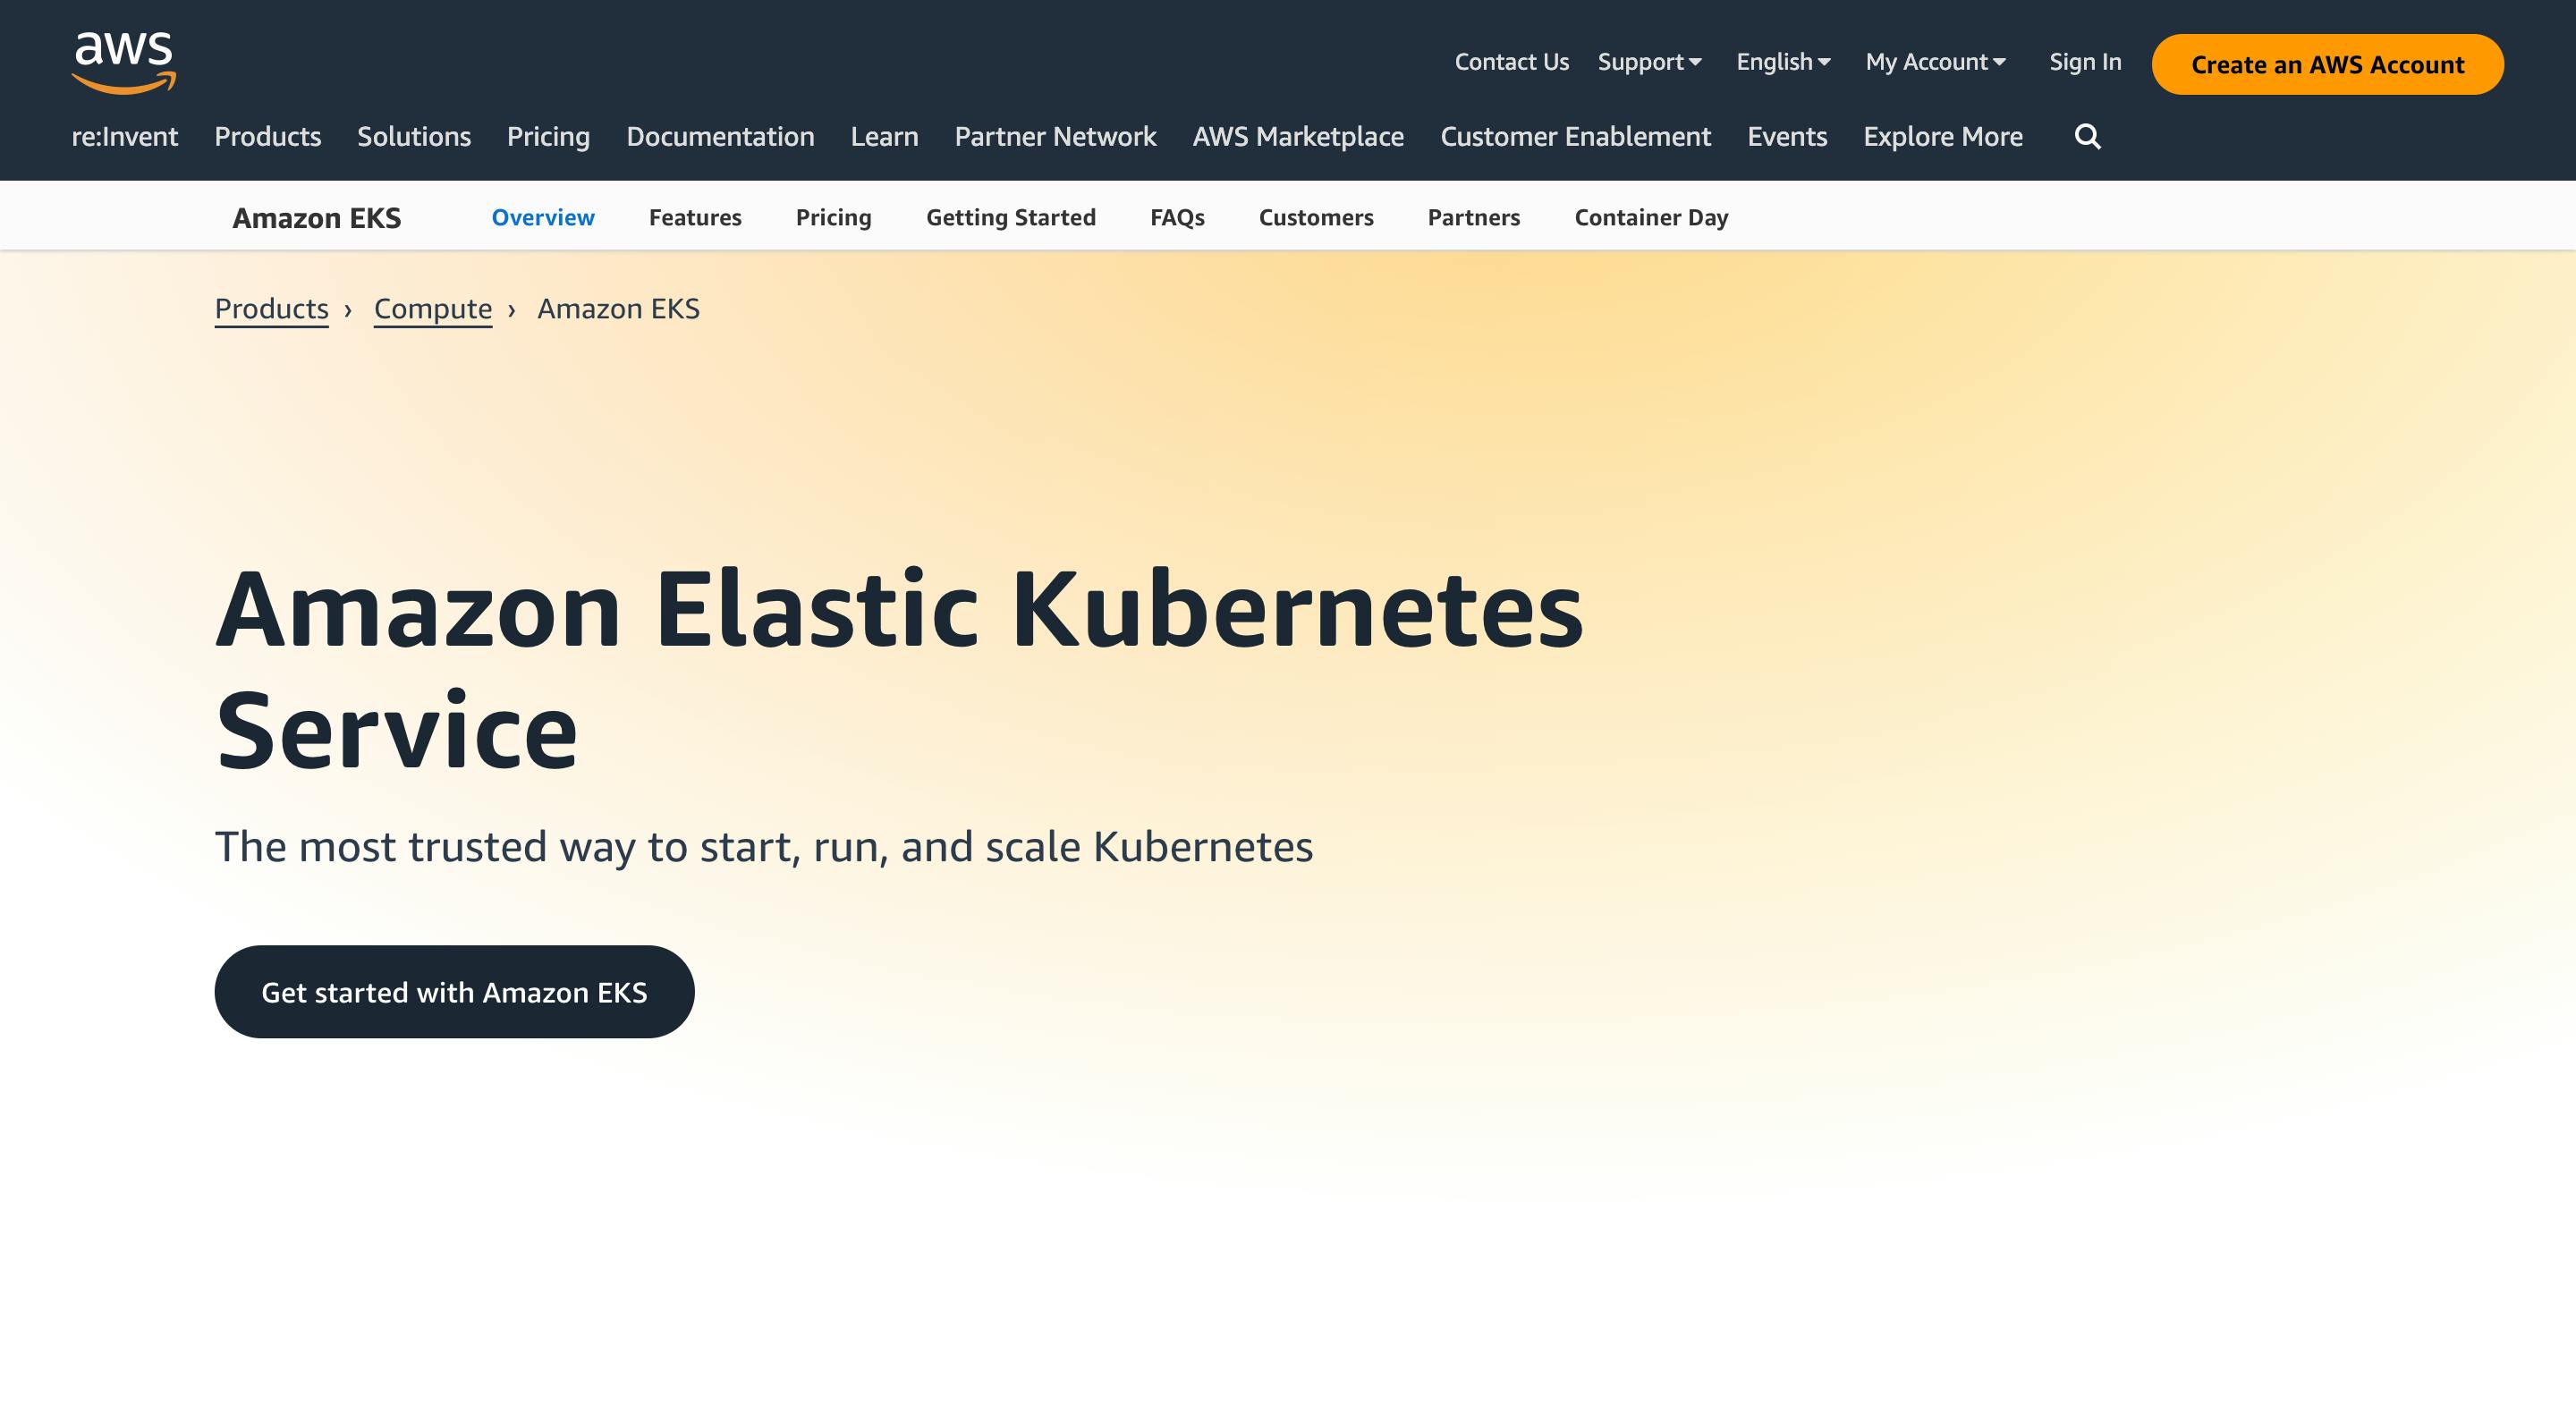  Amazon Elastic Kubernetes Service (EKS)